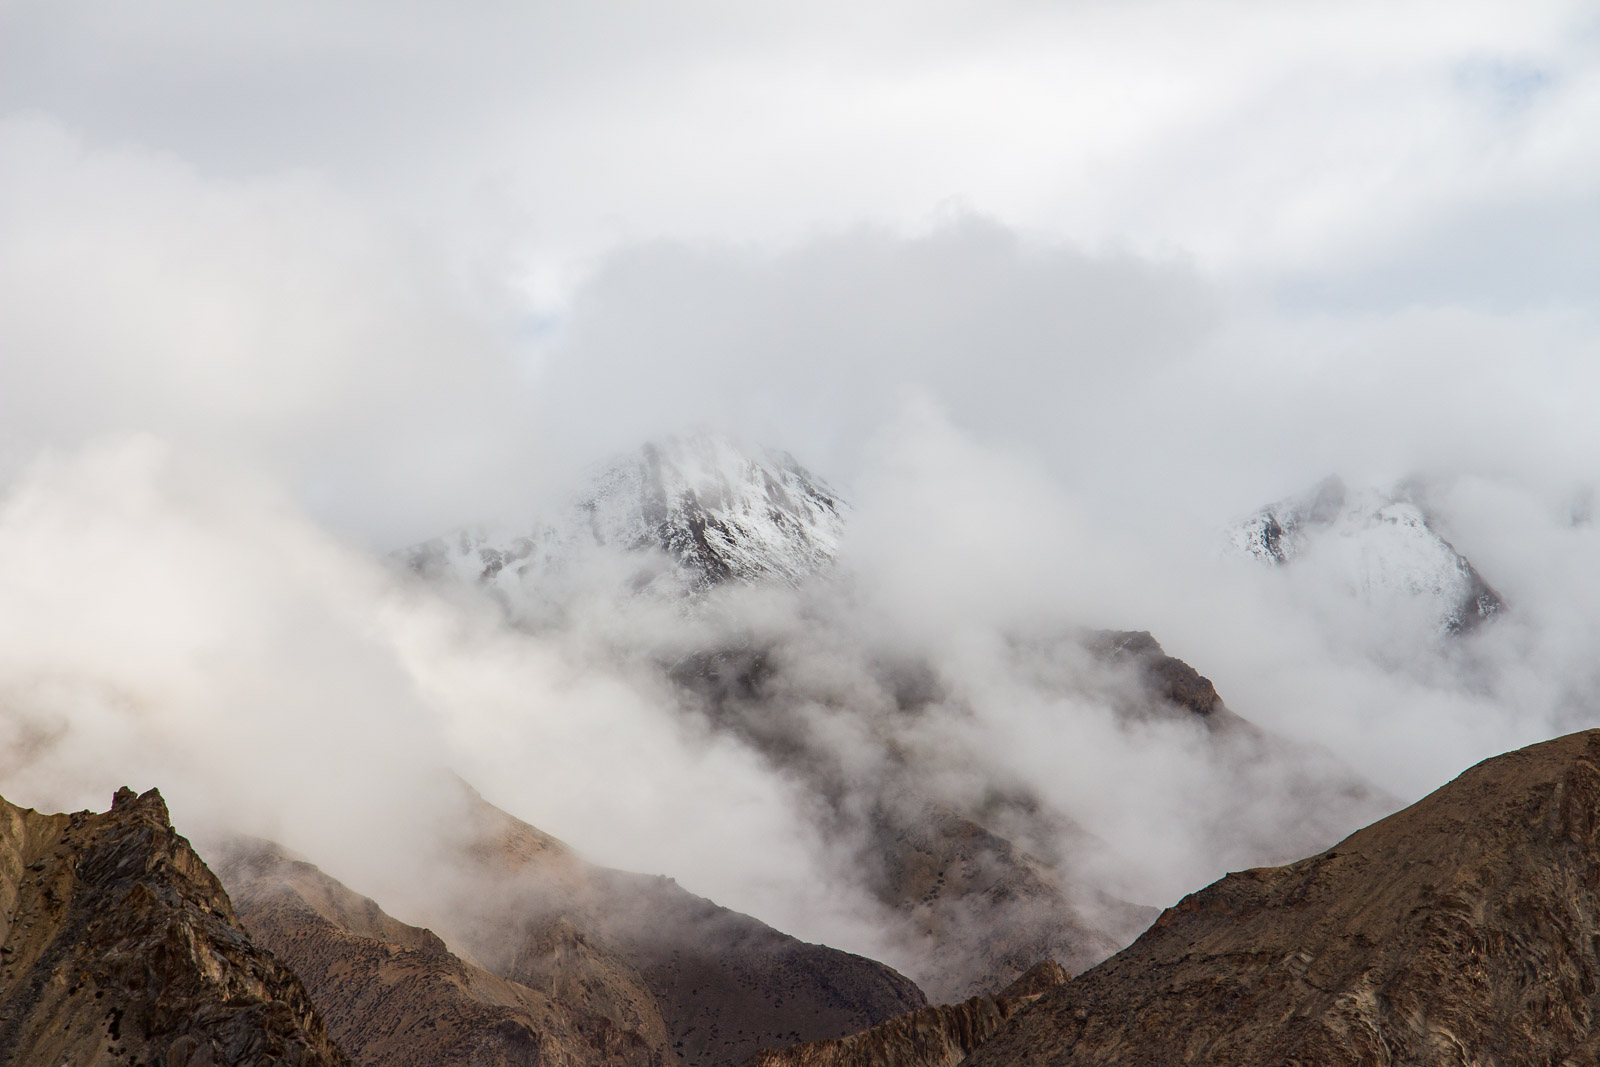 Ladakh 2/4 – Dans les vallées encaissées, là où s’accrochent les nuages